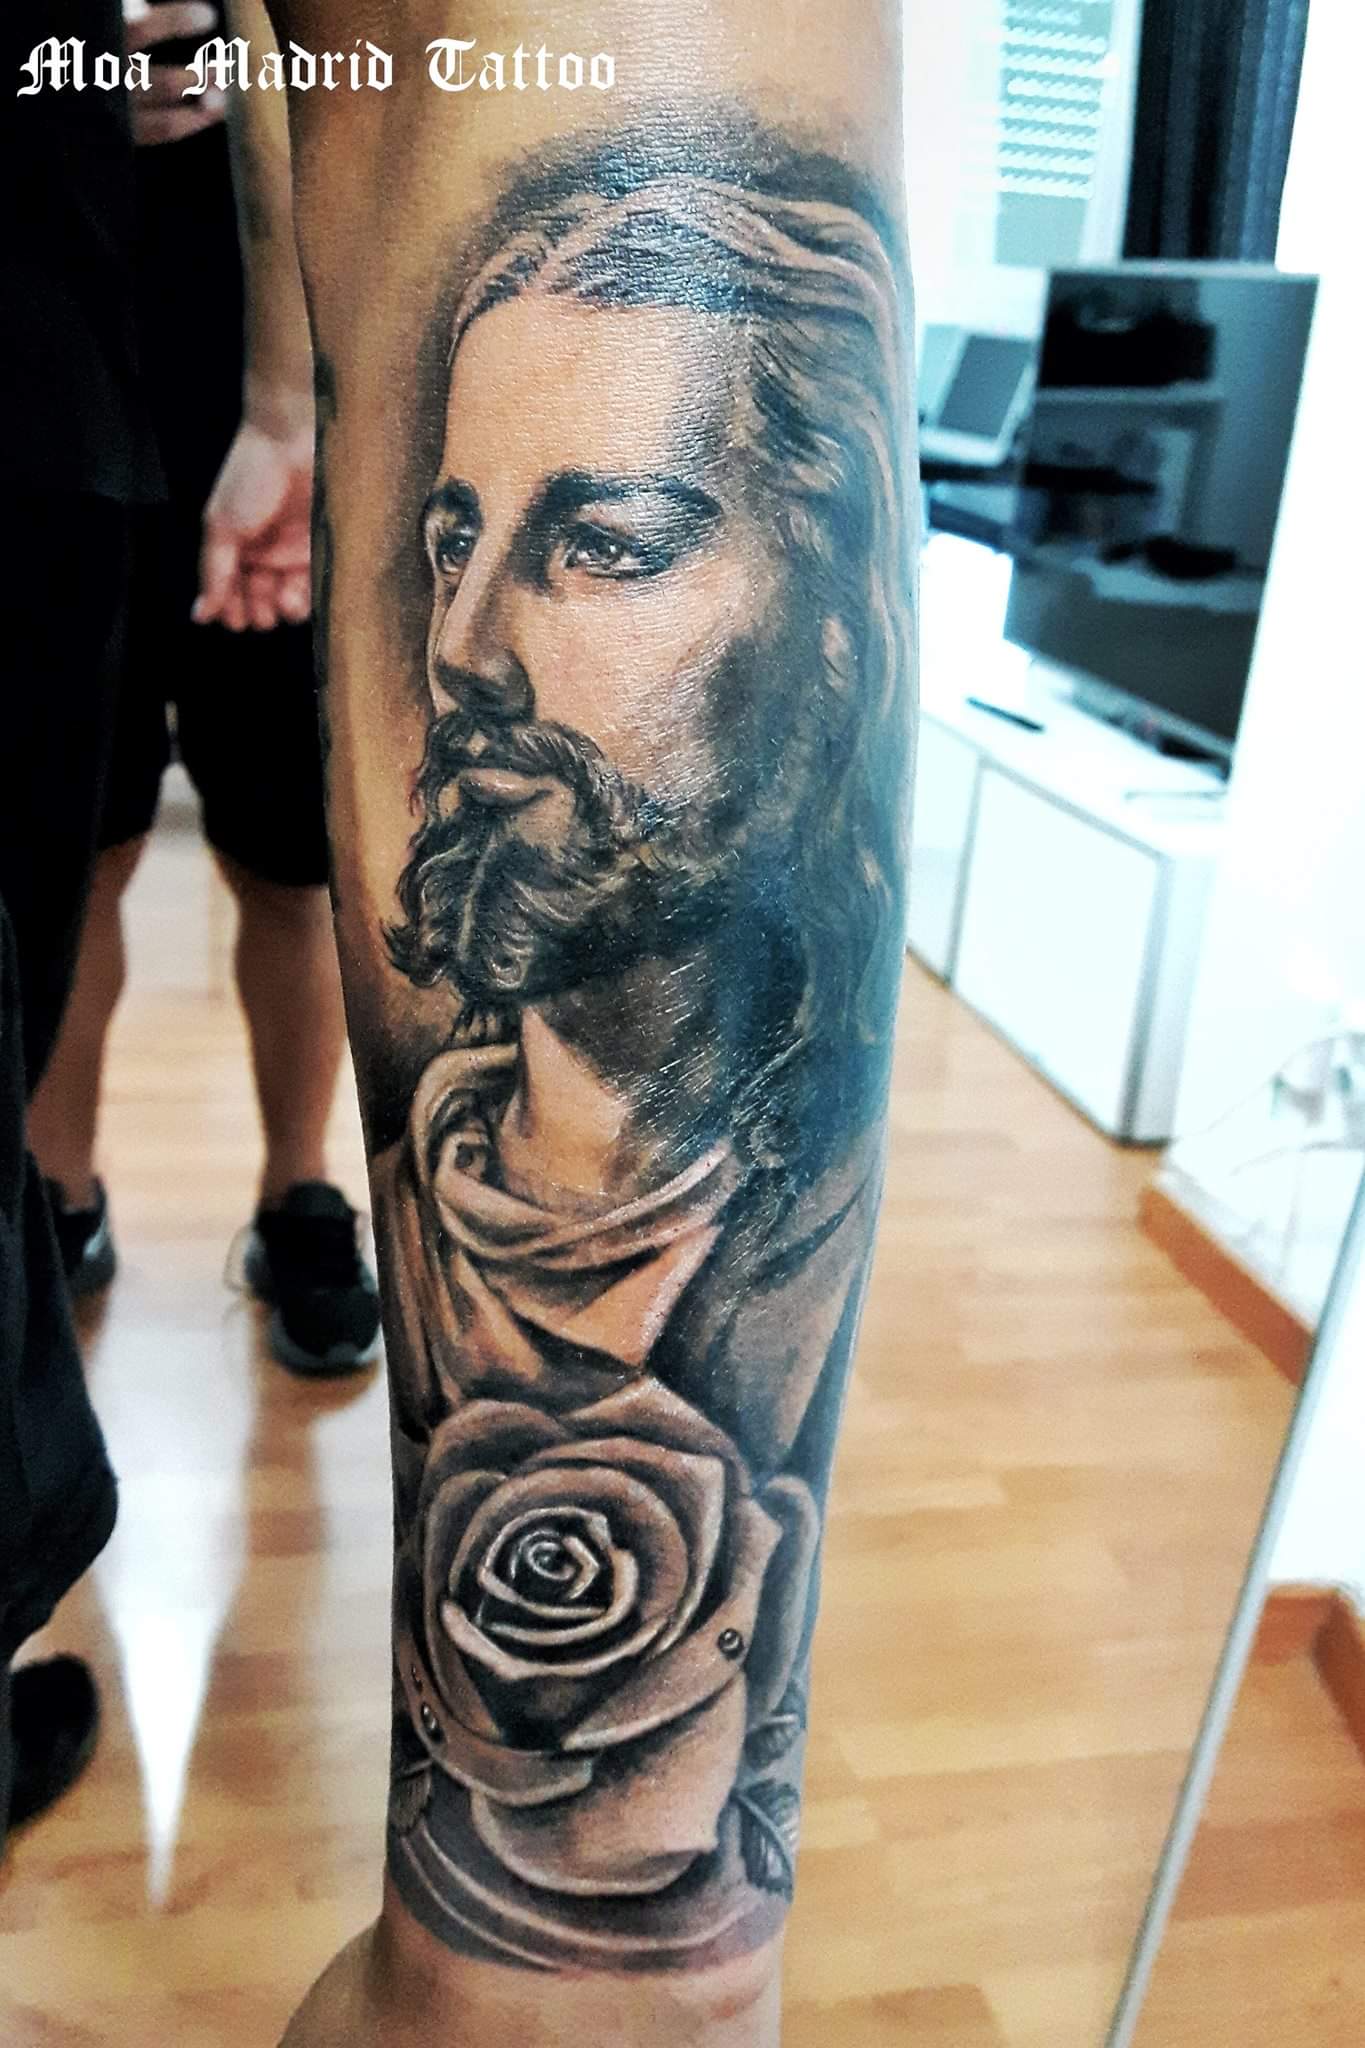 Realista retrato de Cristo en el antebrazo con una rosa